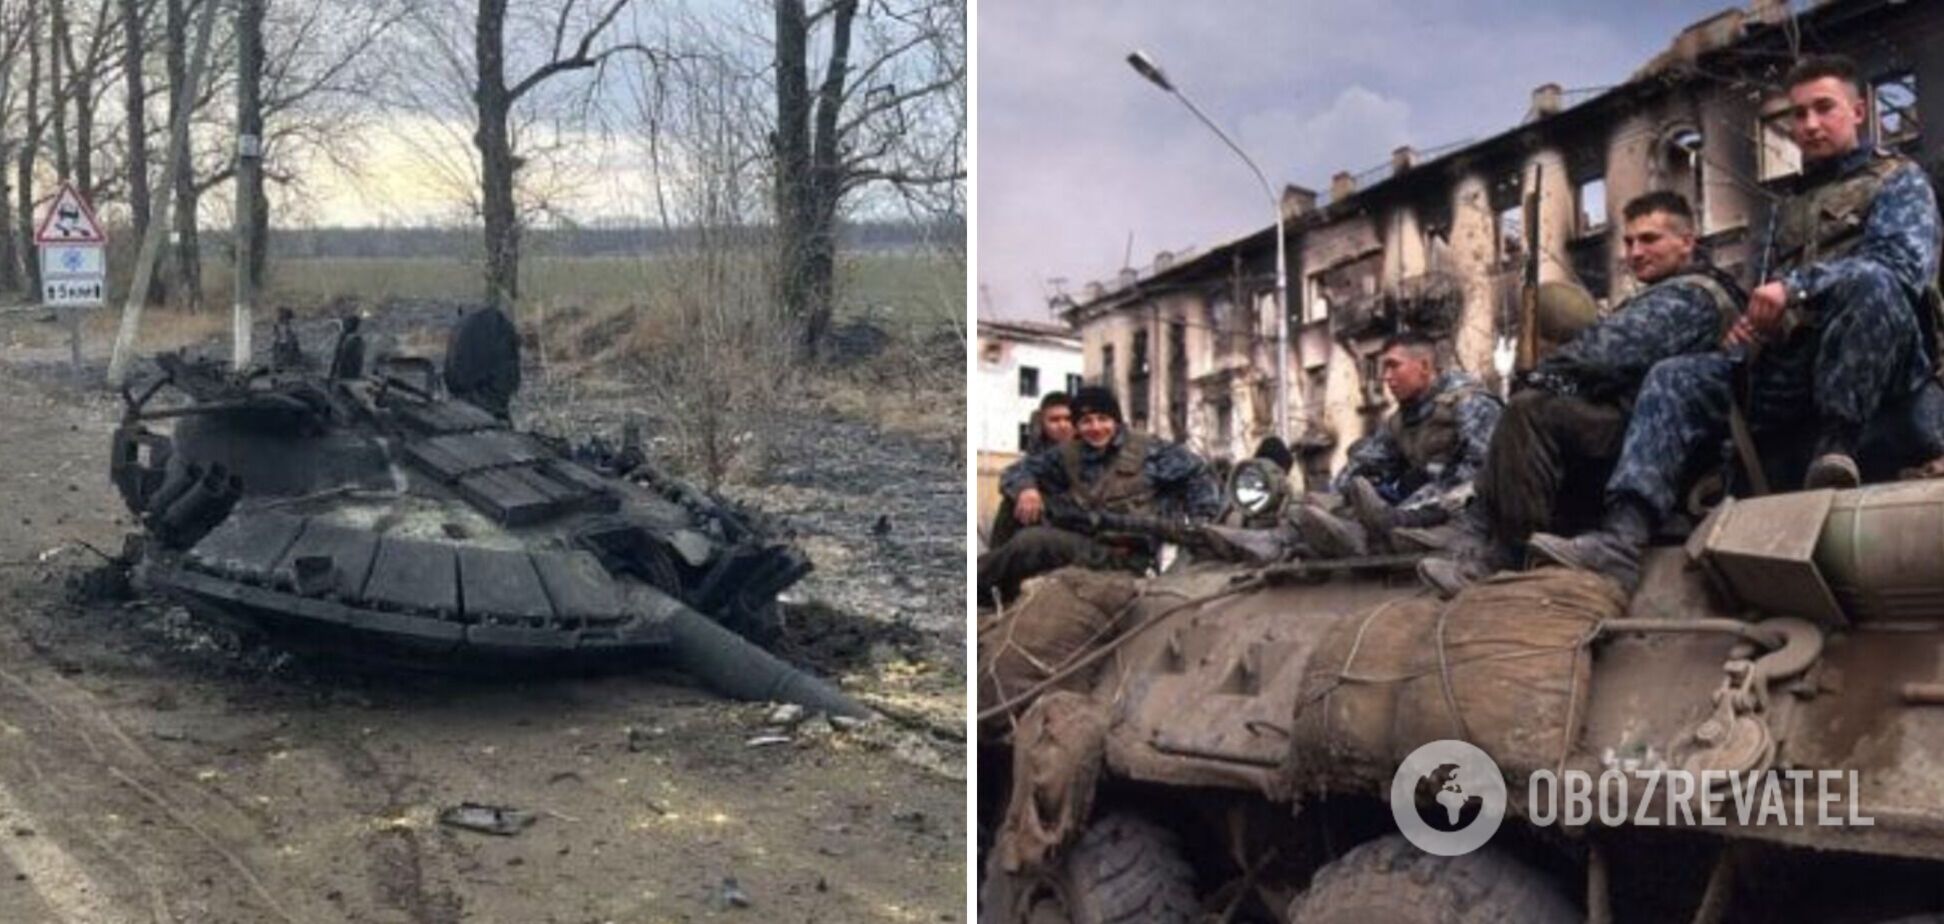 Чечня за три дня! В сети указали на колоссальные потери РФ в Украине